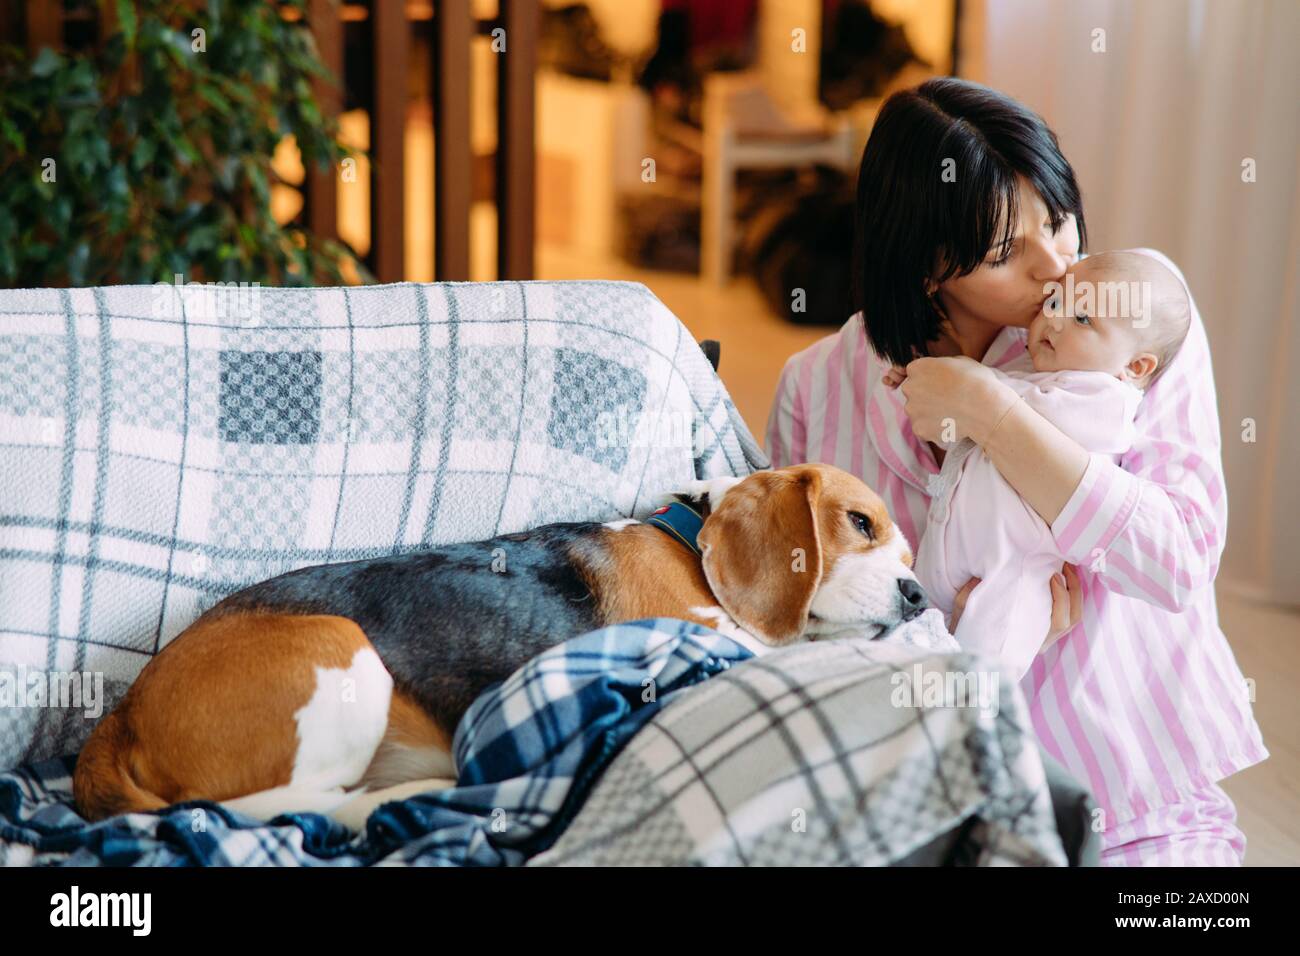 Une mère en pyjama tient un bébé dans ses bras et l'embrasse à côté d'un chien allongé sur le canapé. Banque D'Images